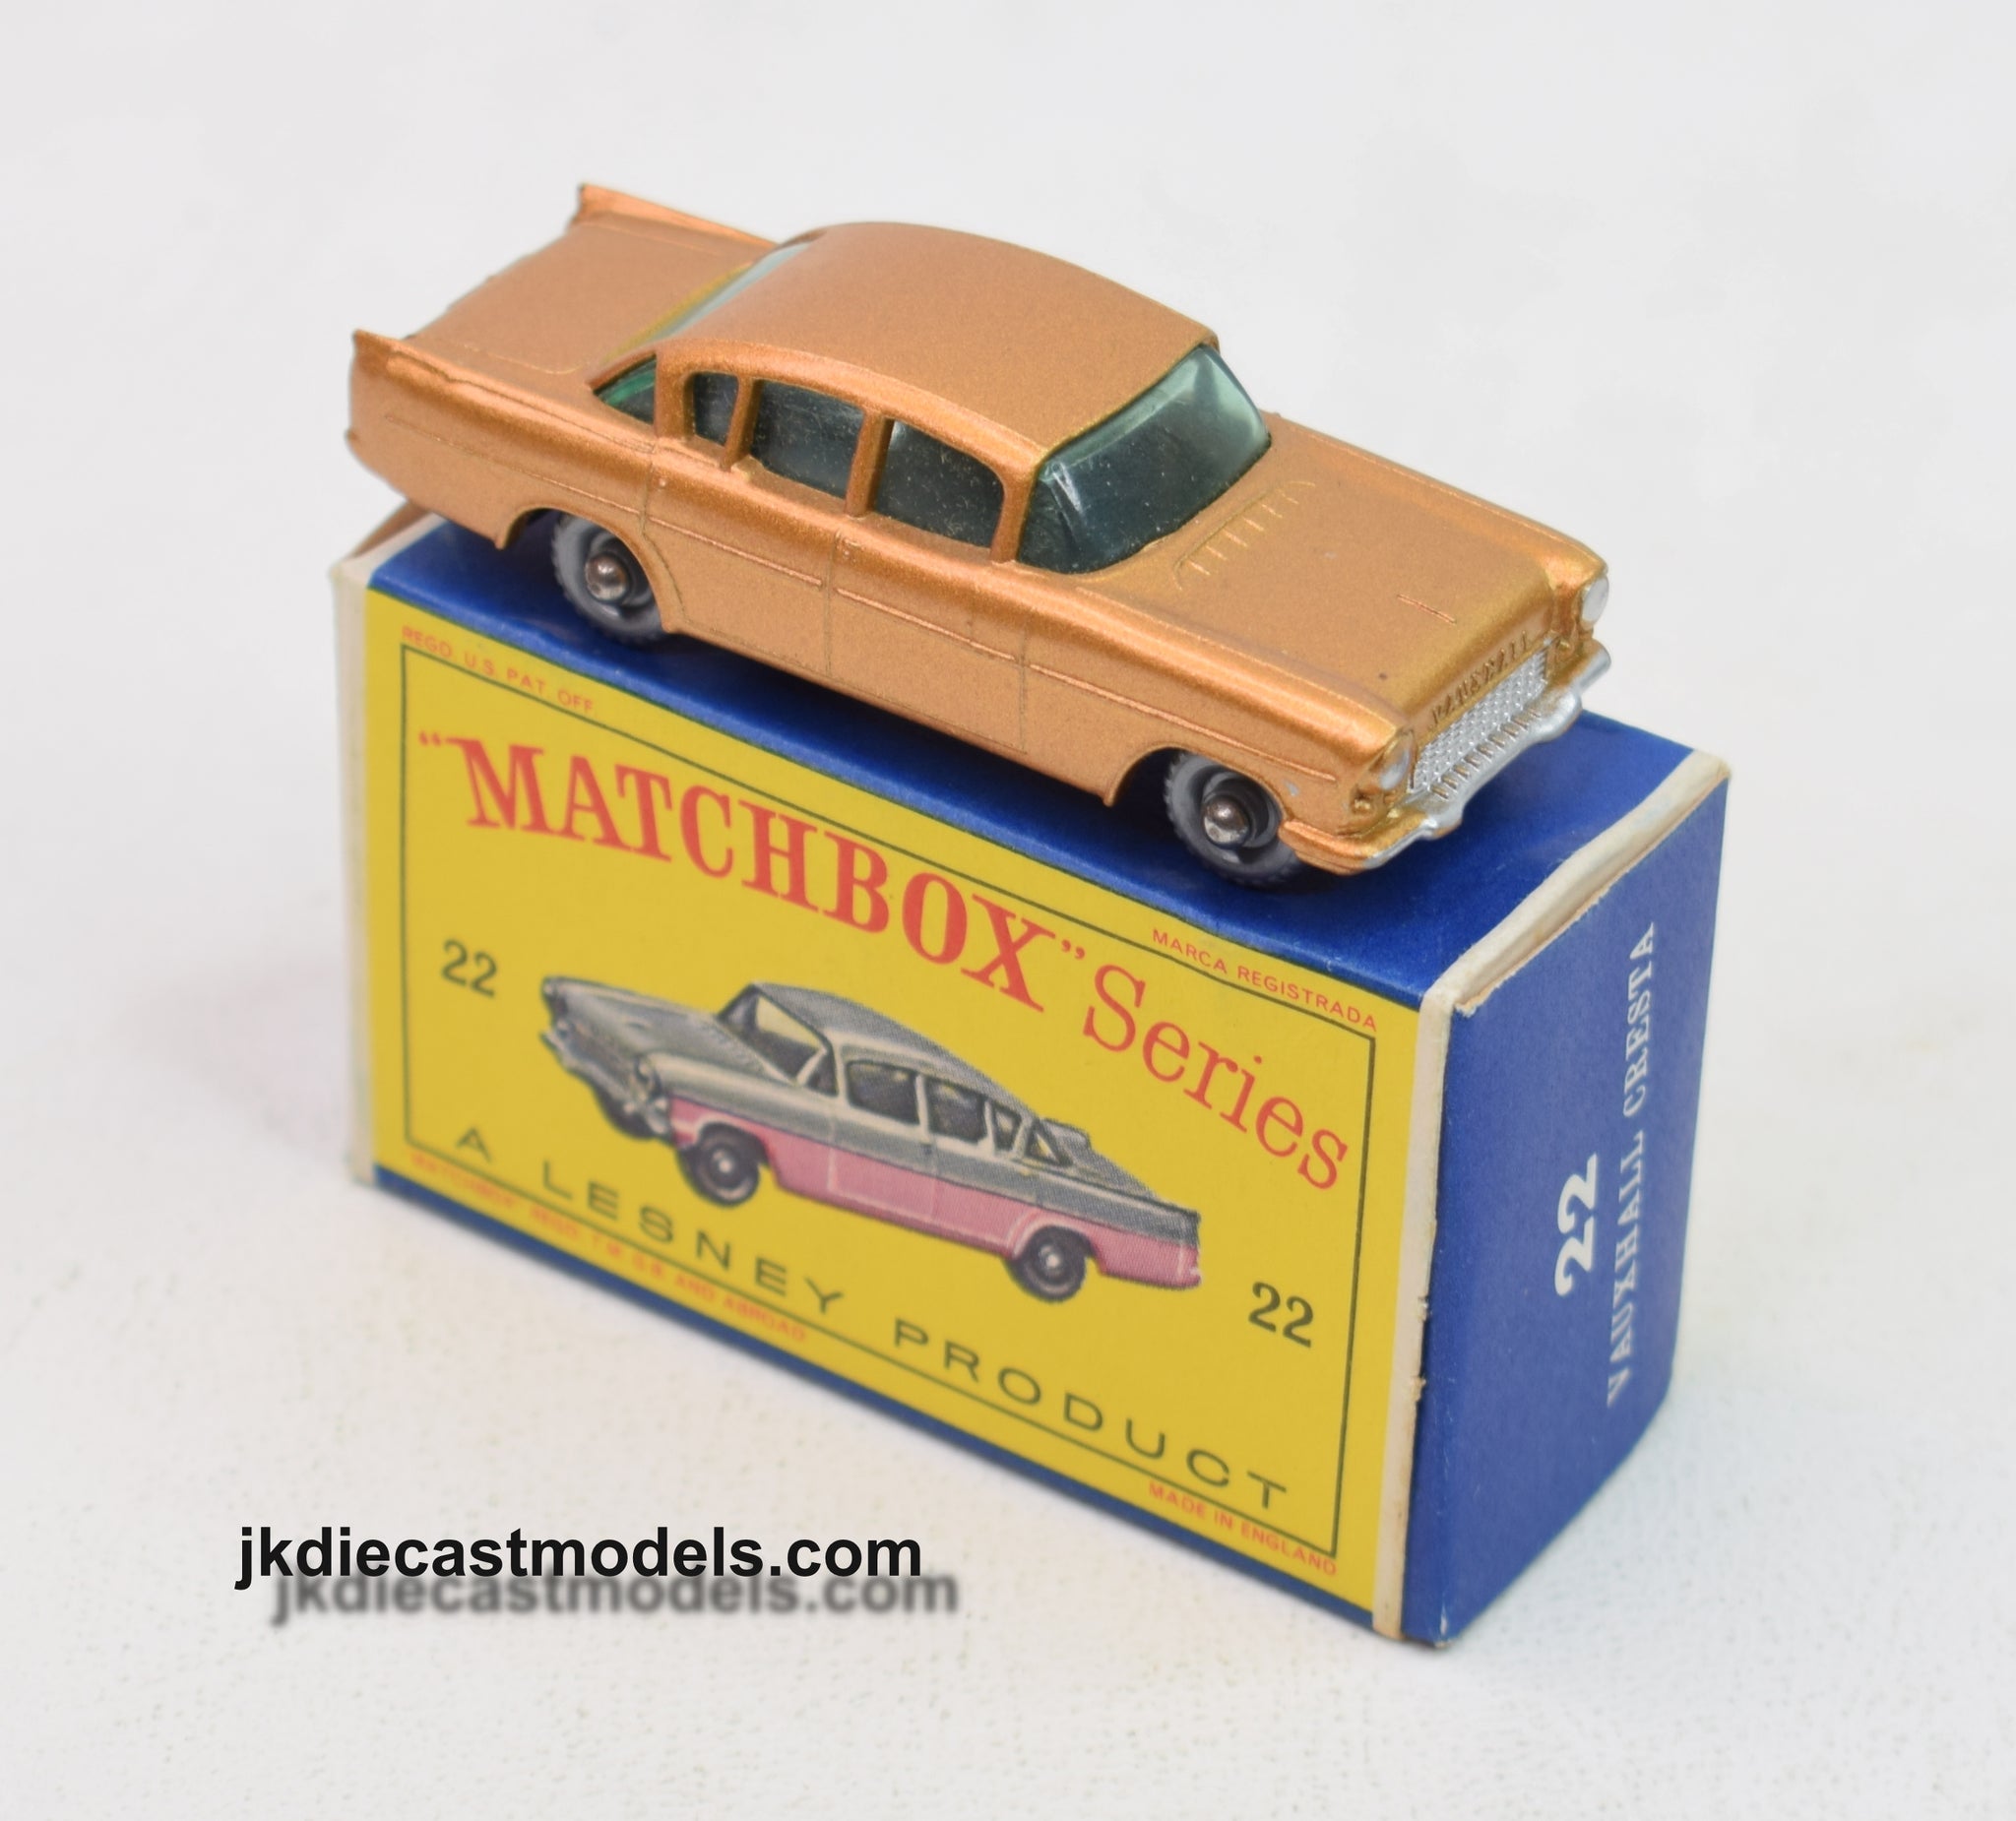 Matchbox Lesney 22 Vauxhall Cresta Virtually Mint/Boxed – JK DIE 